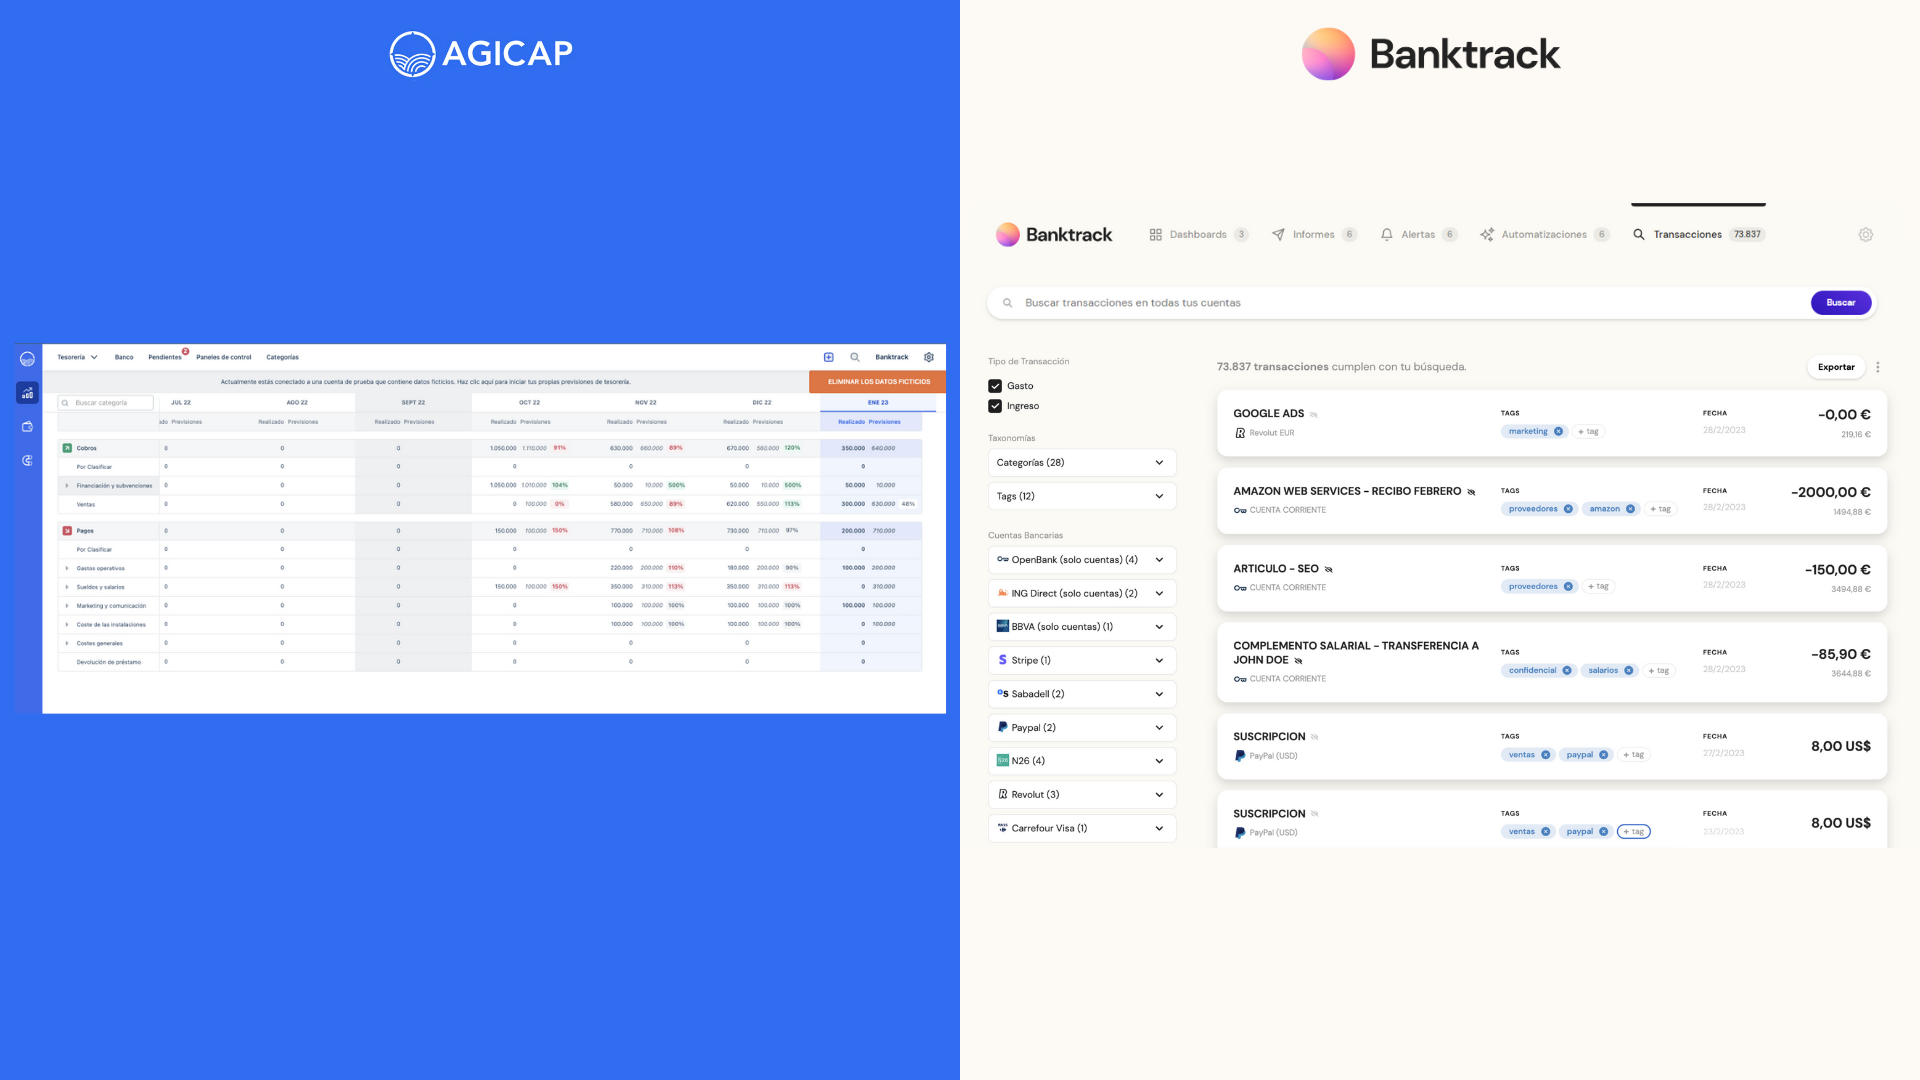 Capturas de pantalla sobre el historial bancario que puedes visualizar desde agicap y su alternativa Banktrack